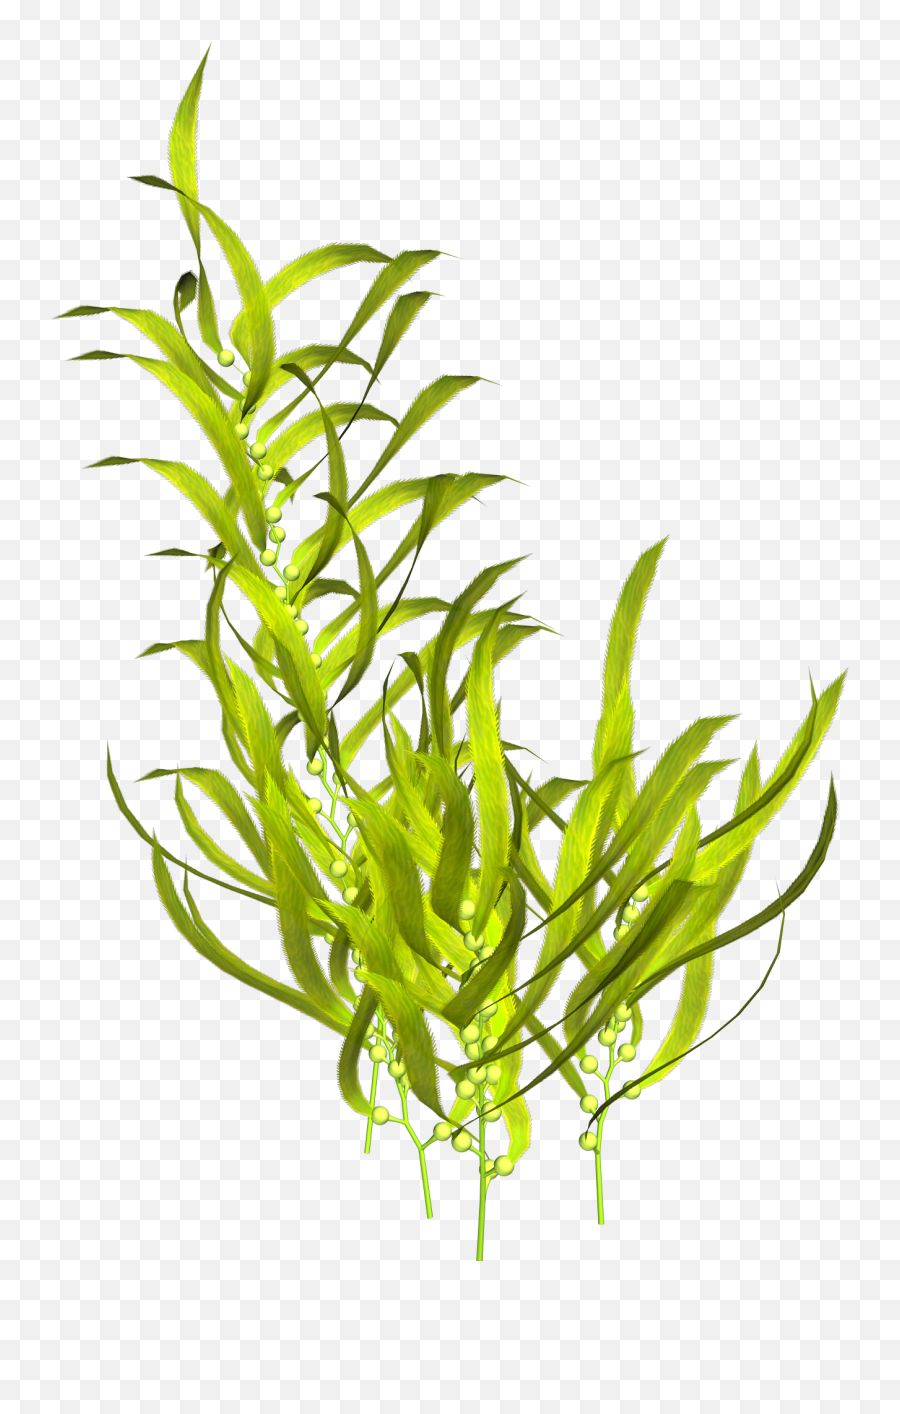 Seaweed Aquatic Plants Clip Art - Transparent Background Aquatic Plants Png,Seaweed Png